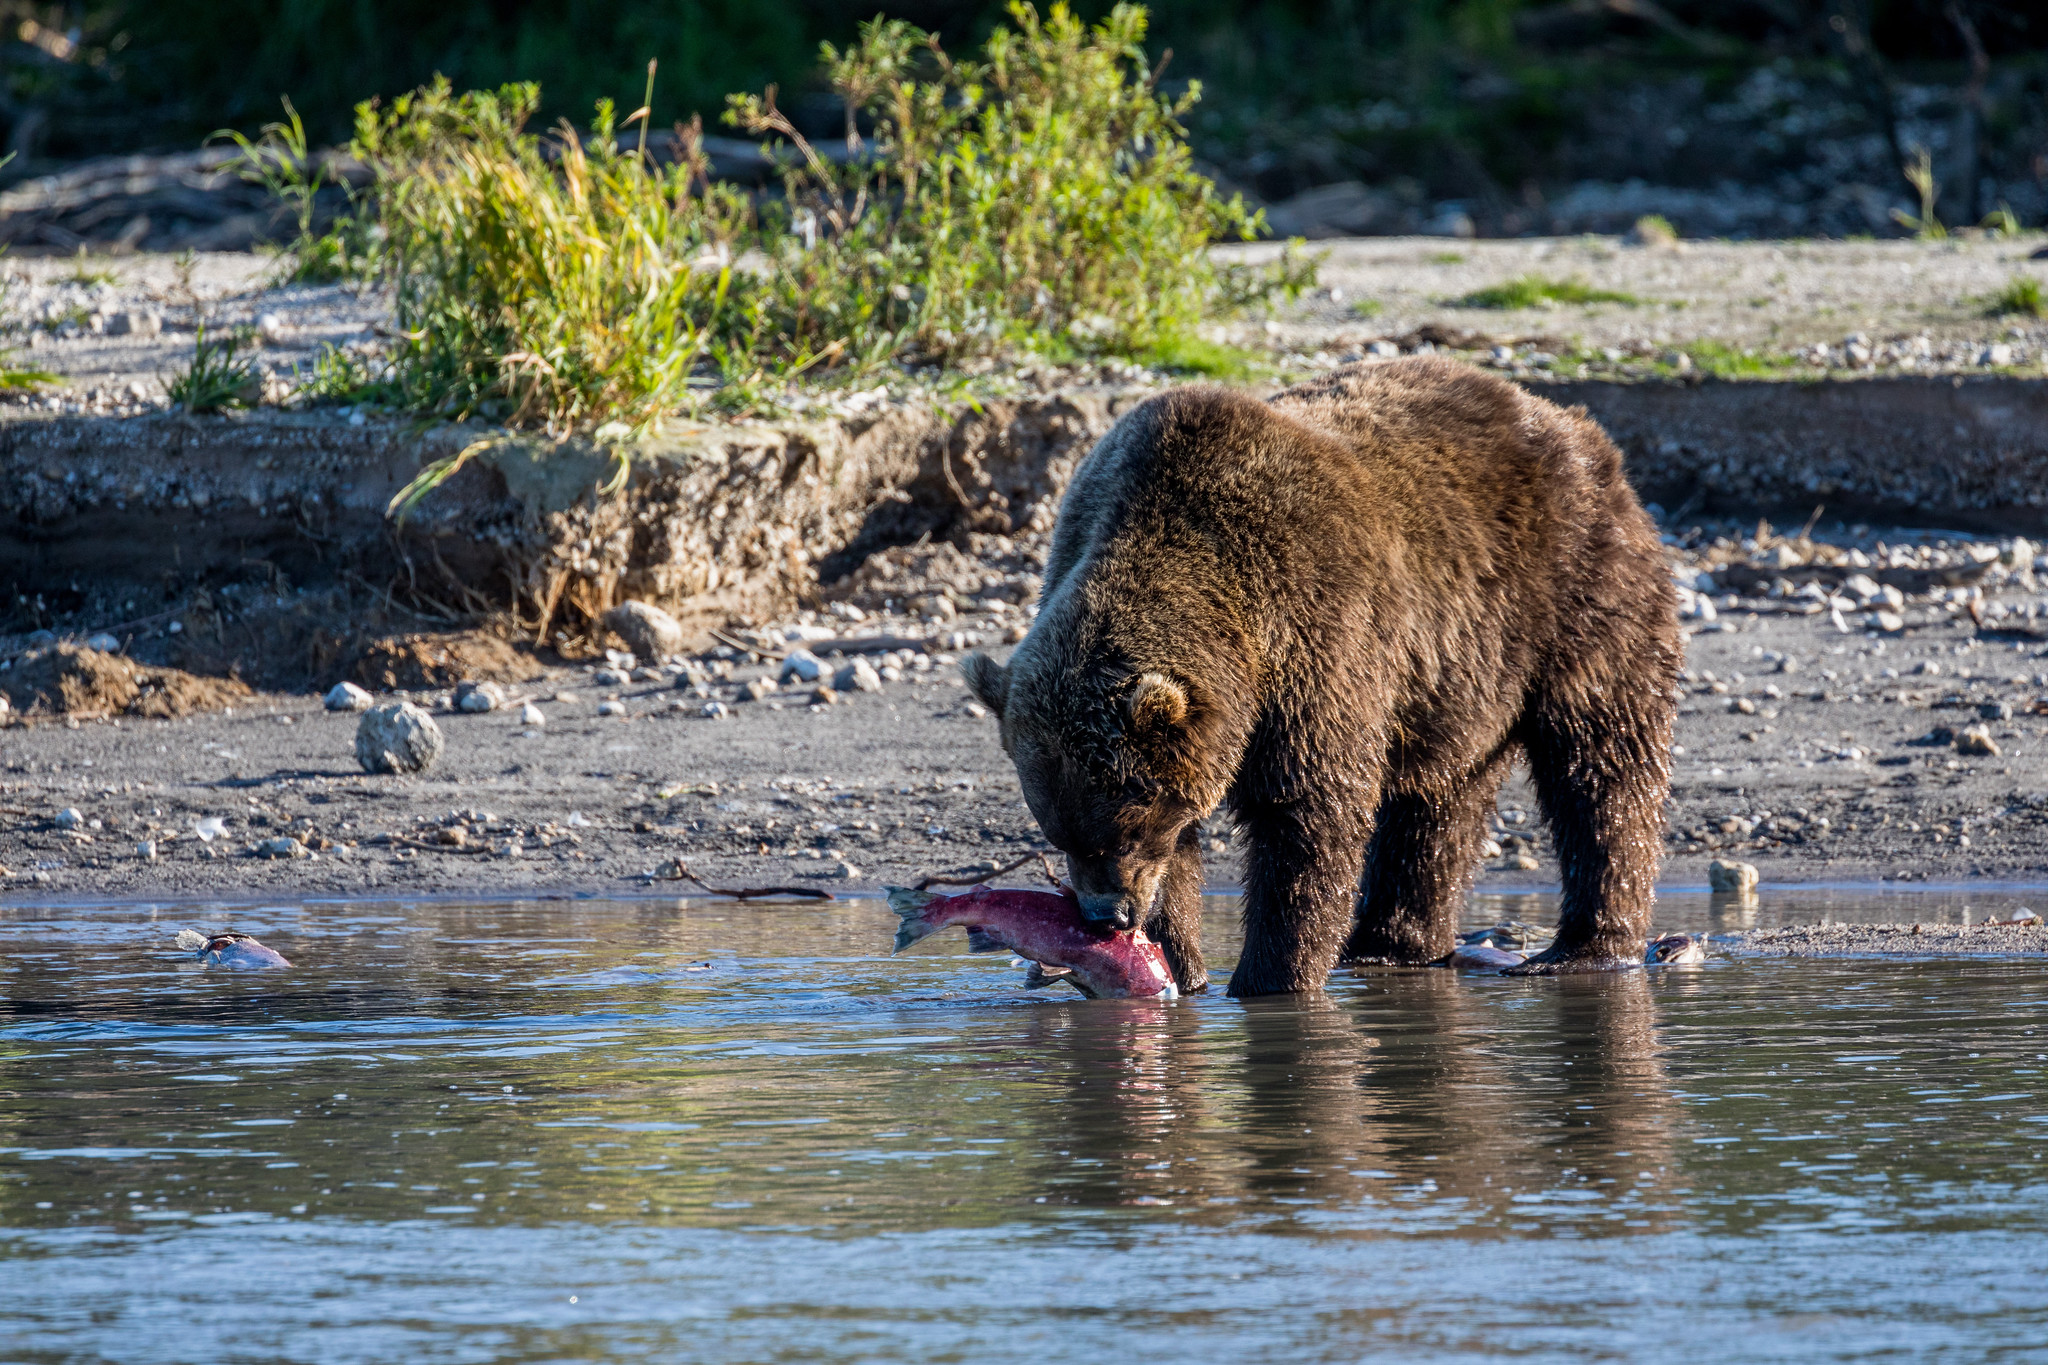 Kamchatka Brown Bear - Kamchatka Bears